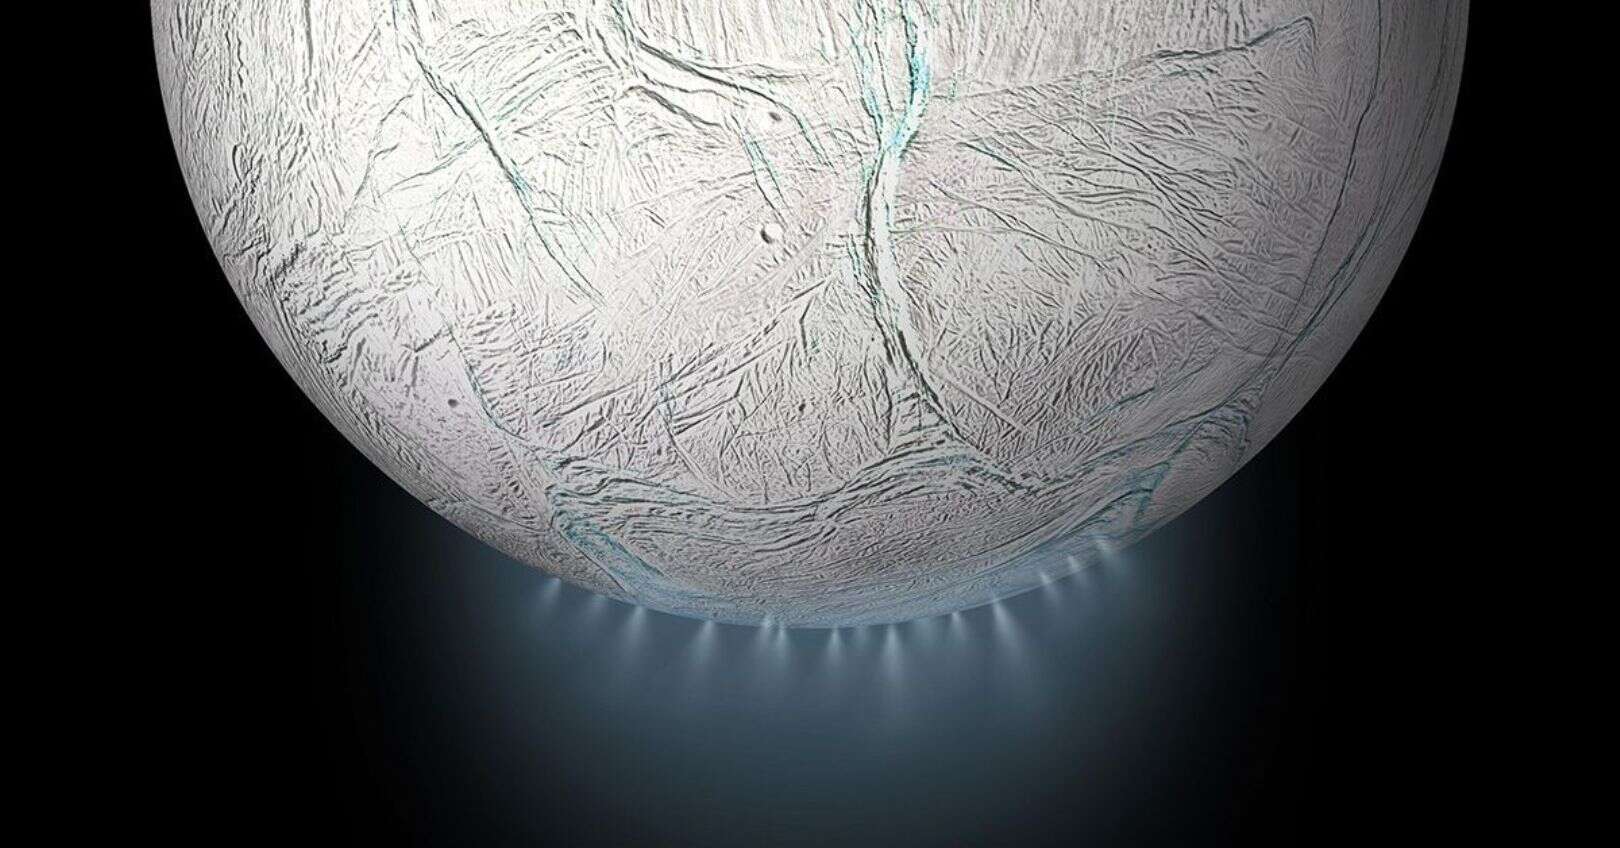 We kunnen tekenen van leven detecteren in de warmwaterbronnen van Enceladus!